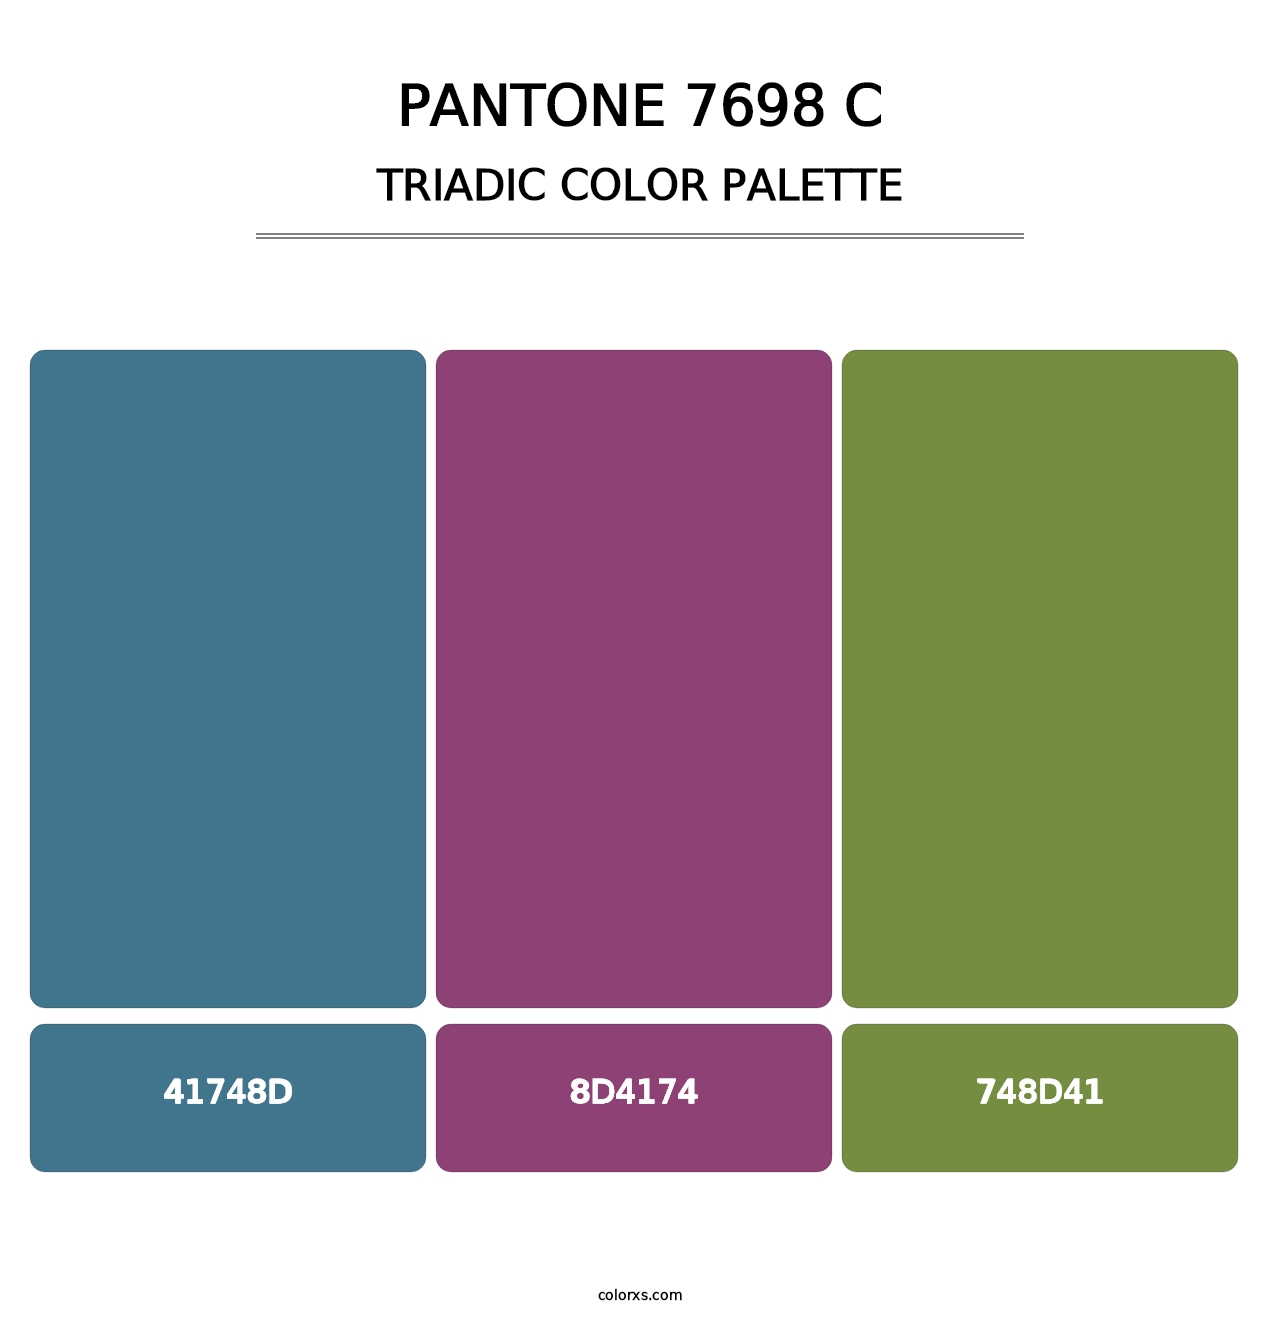 PANTONE 7698 C - Triadic Color Palette